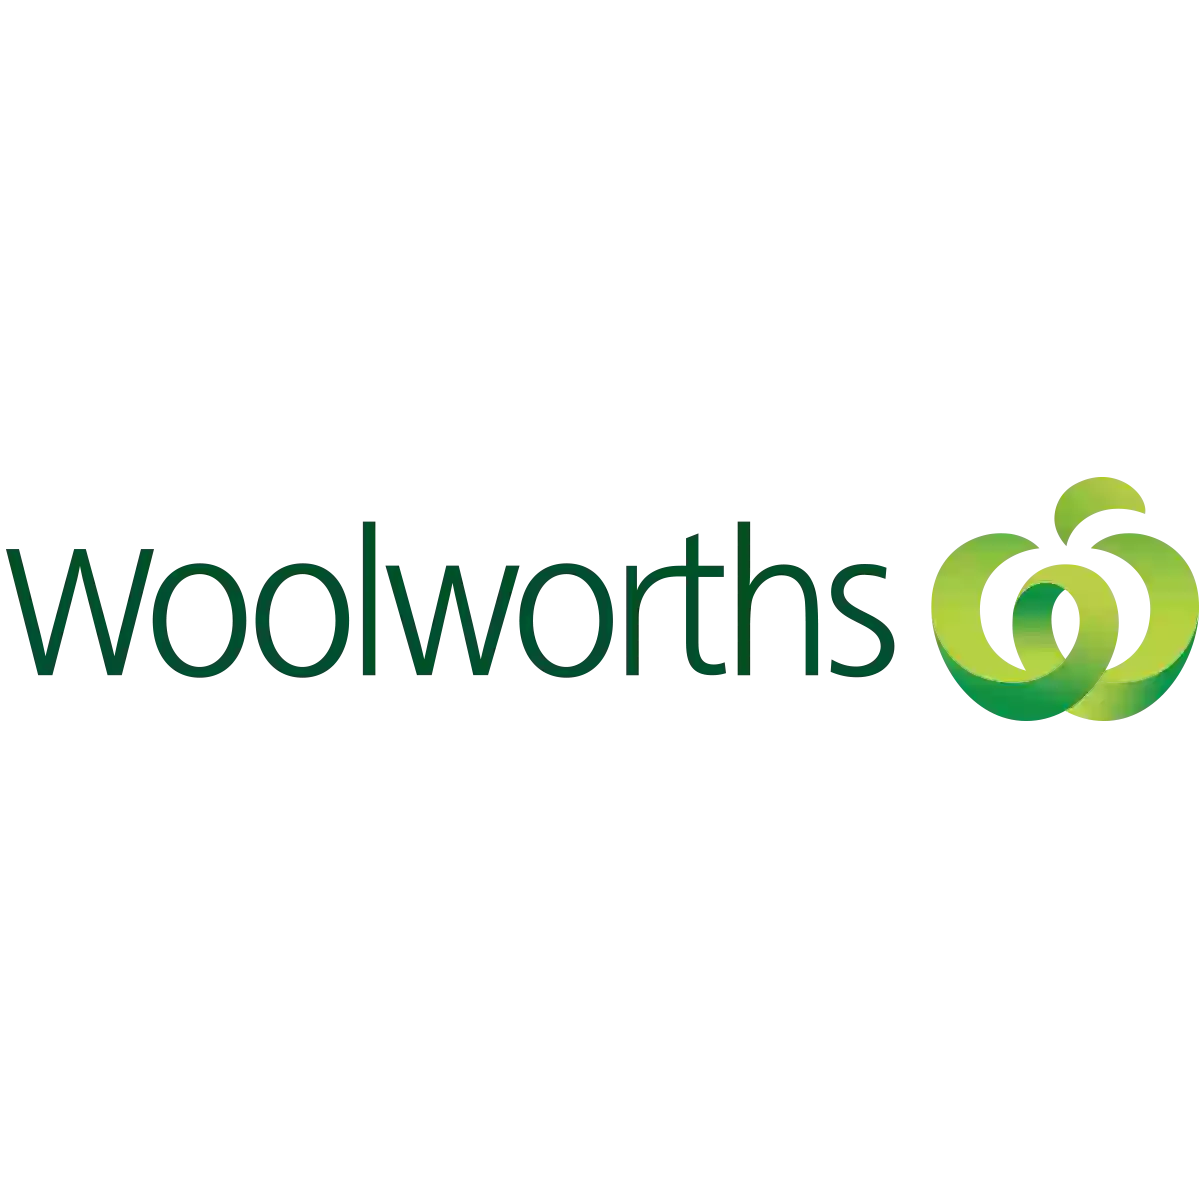 Woolworths Metro Woolloomooloo